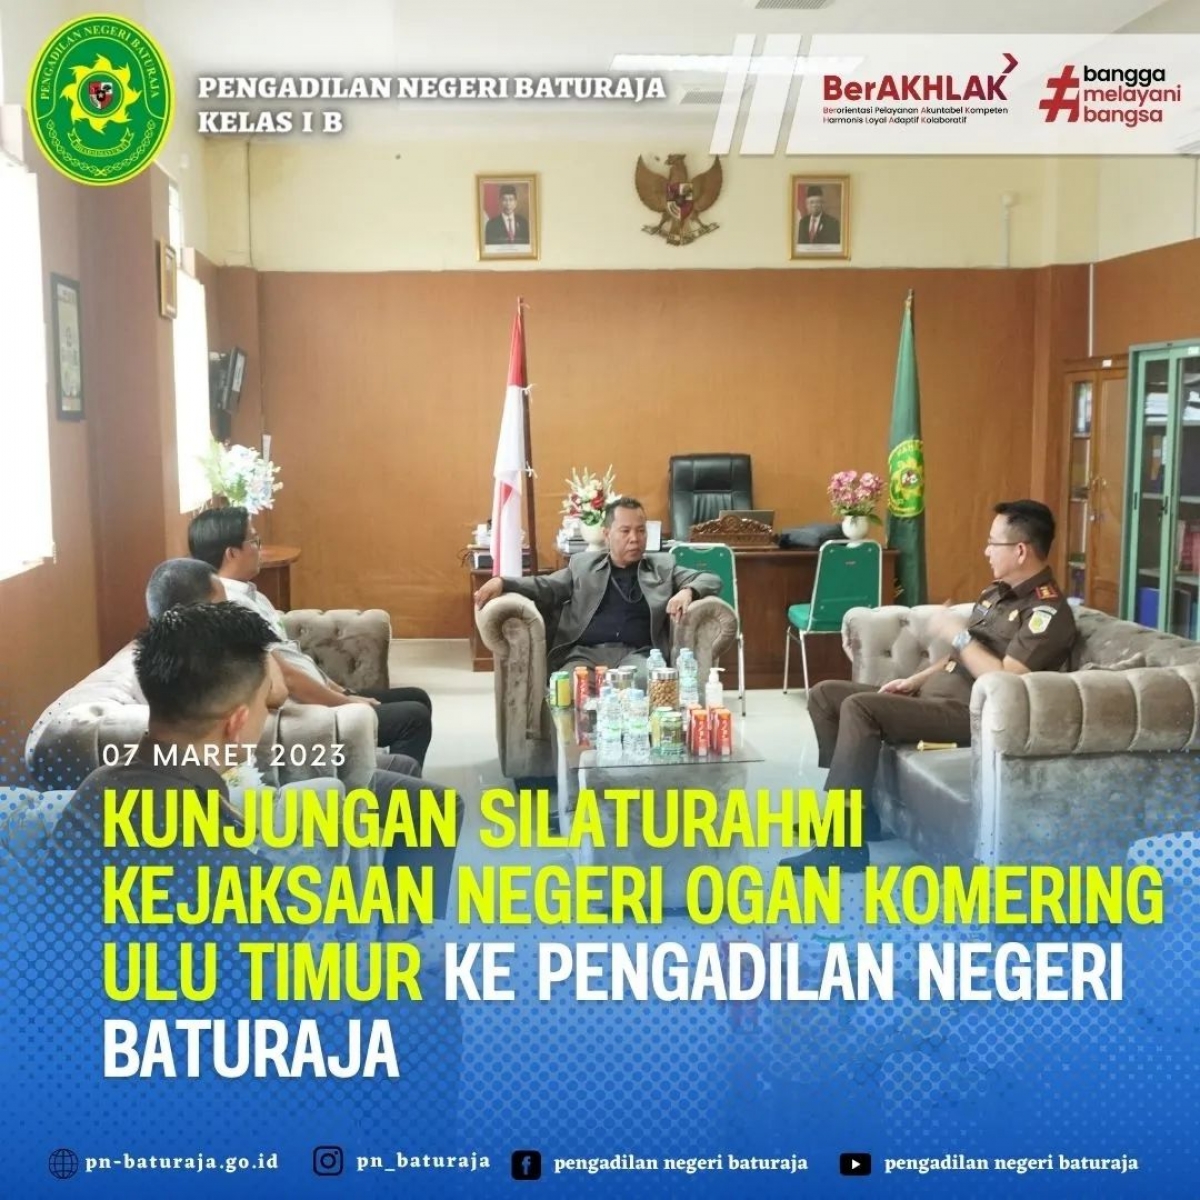 Kunjungan Silahturahmi Kejaksaan Negeri Ogan Komering Ulu Timur Ke Pengadilan Negeri Baturaja